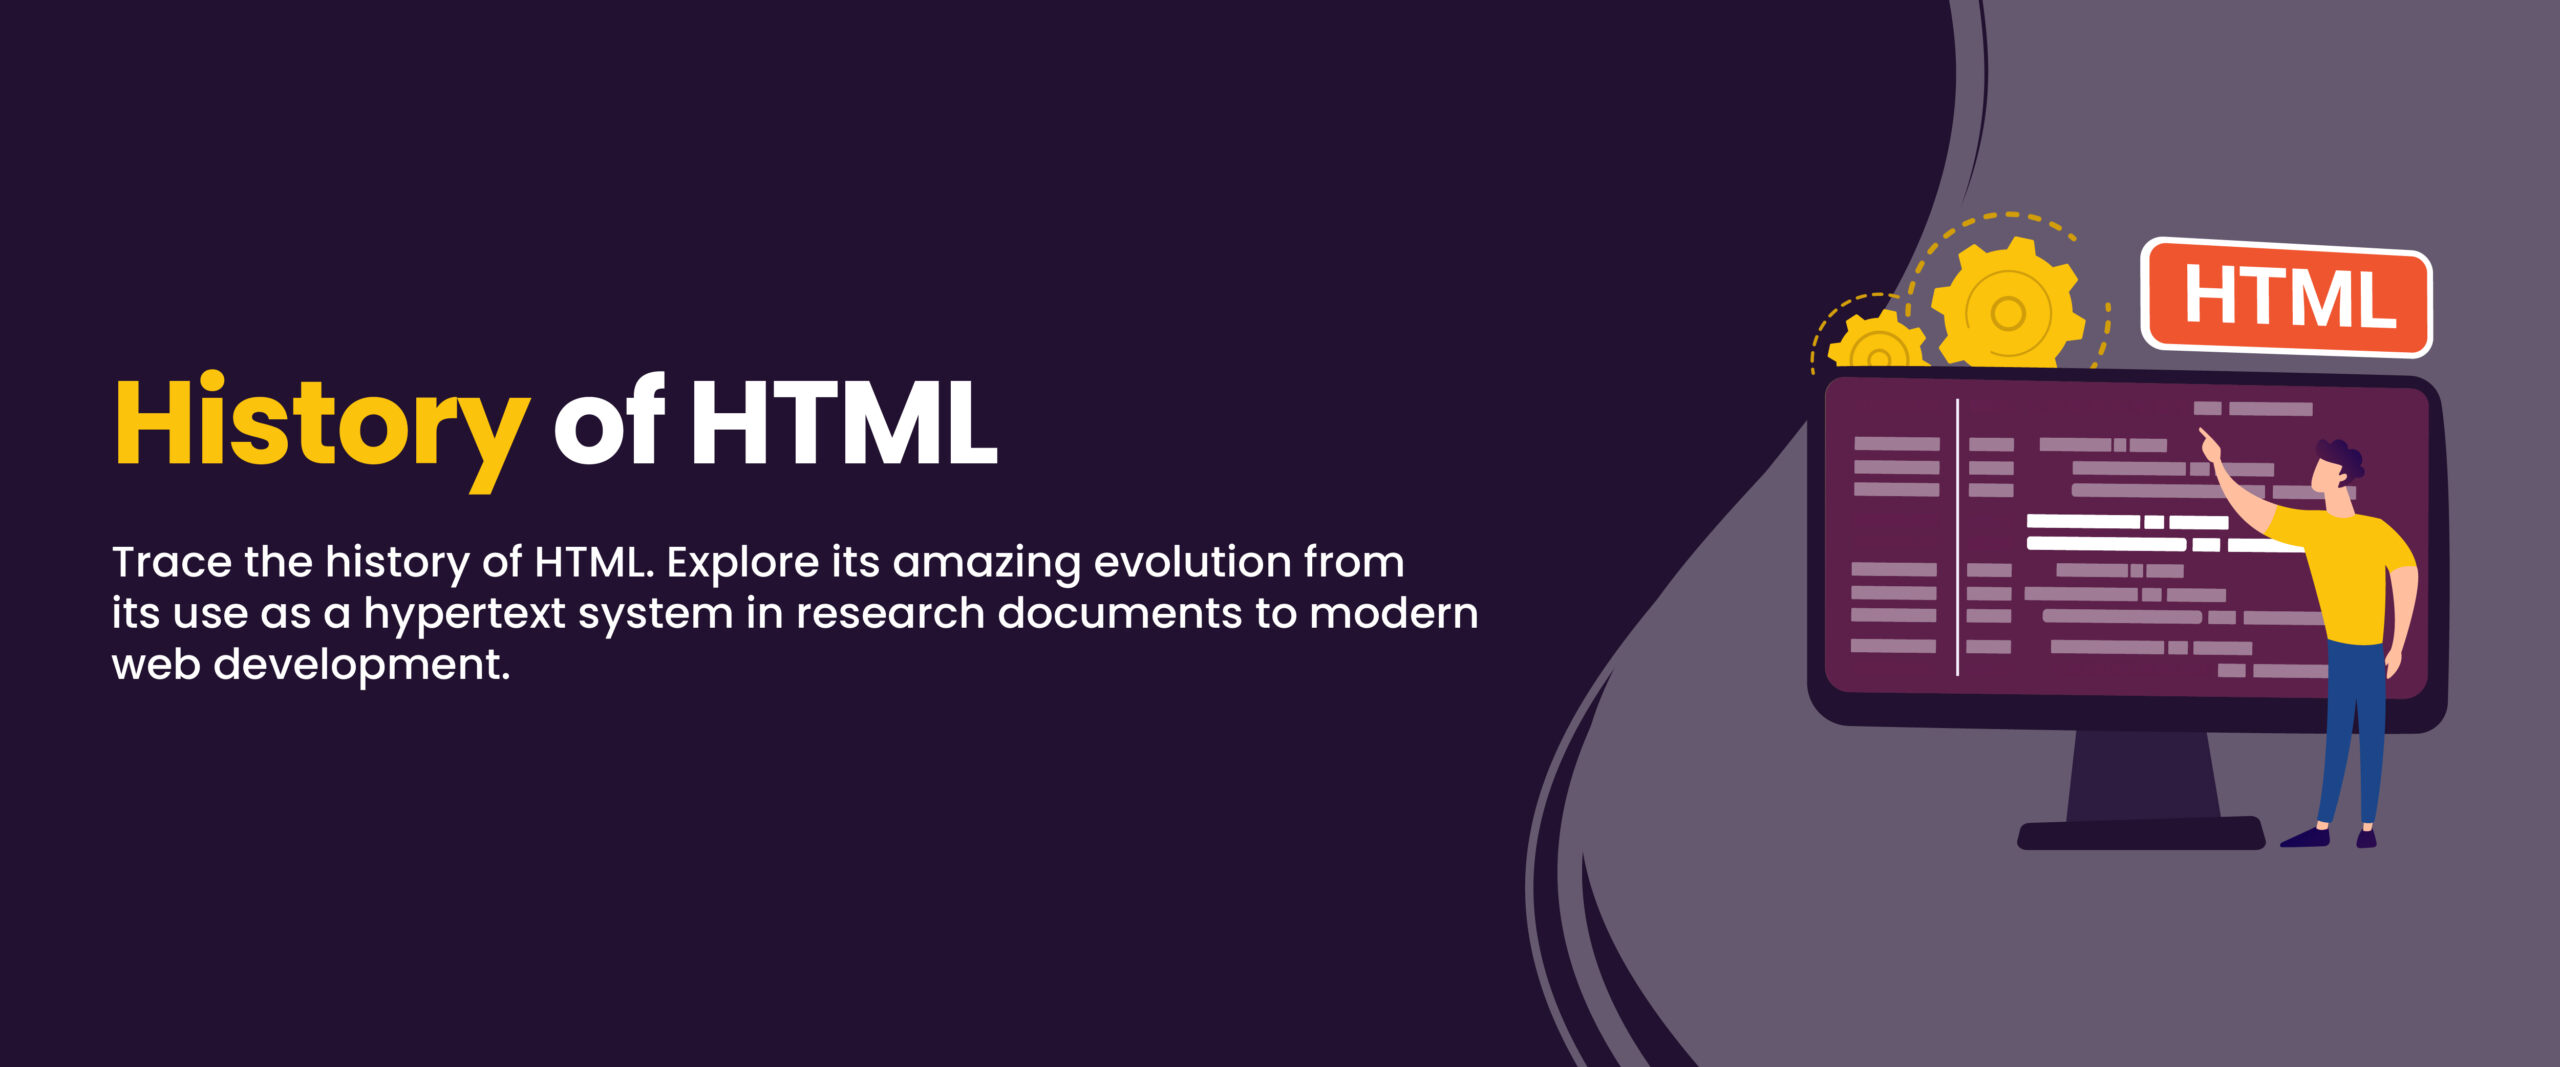 history of HTML